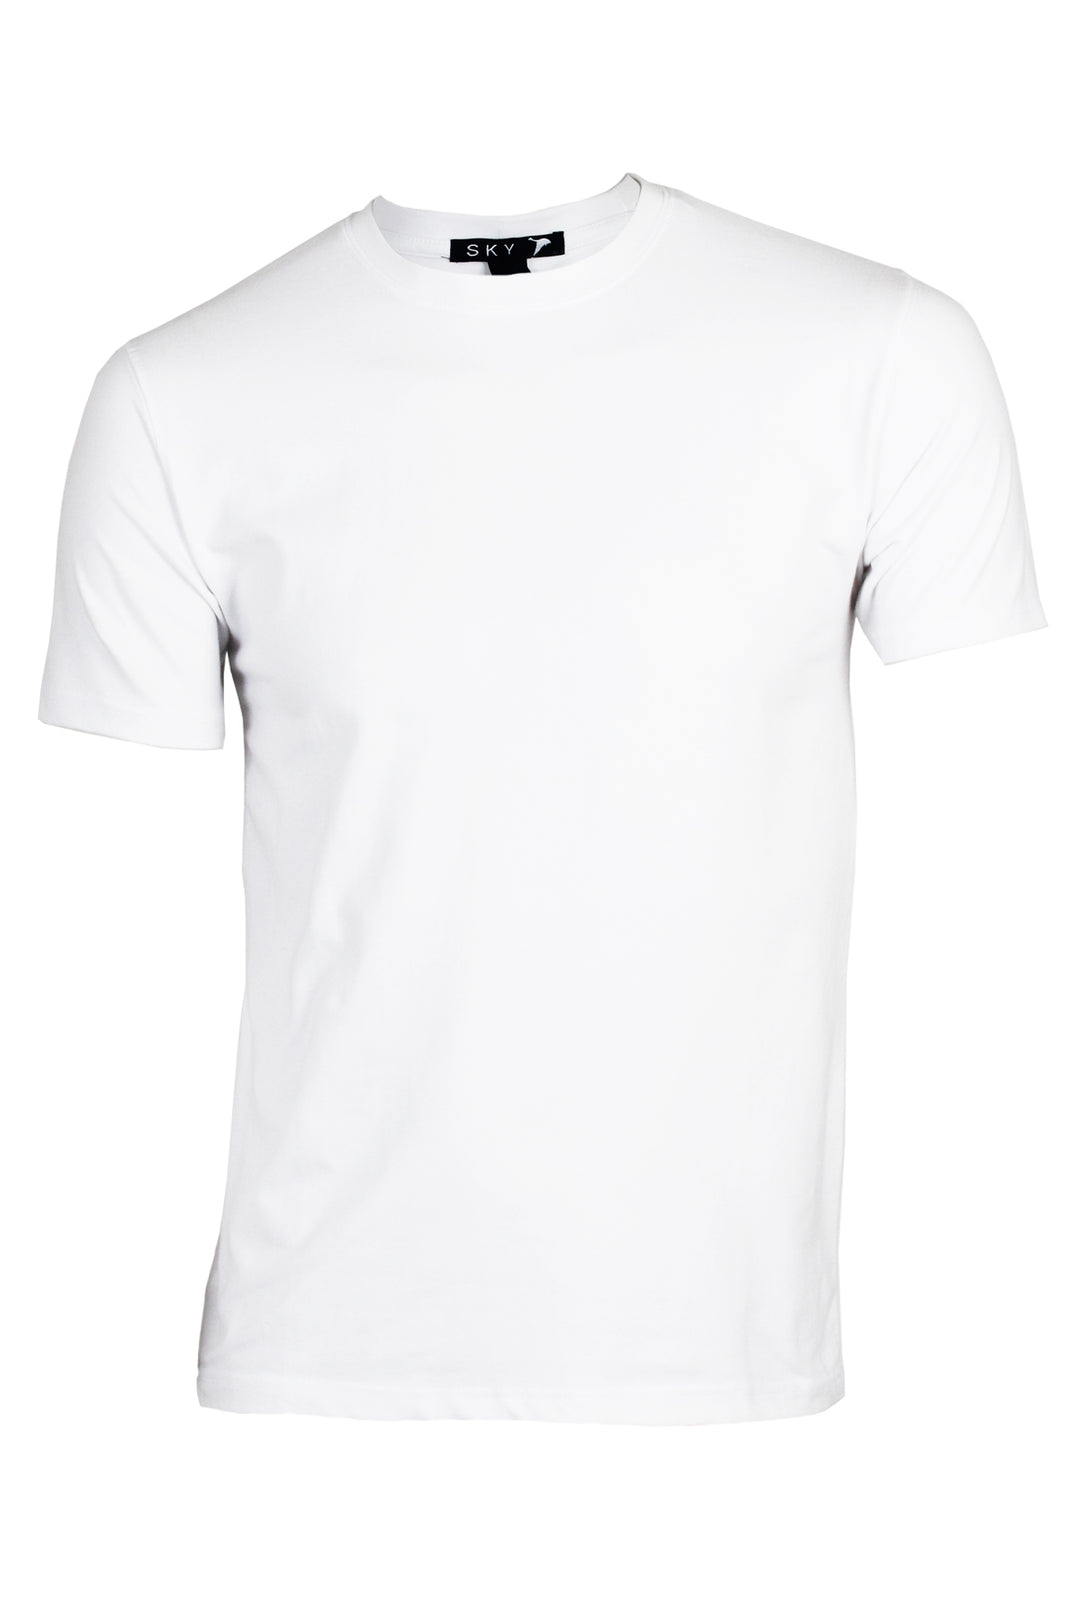 T-shirt uomo girocollo tinta unita in cotone elasticizzato